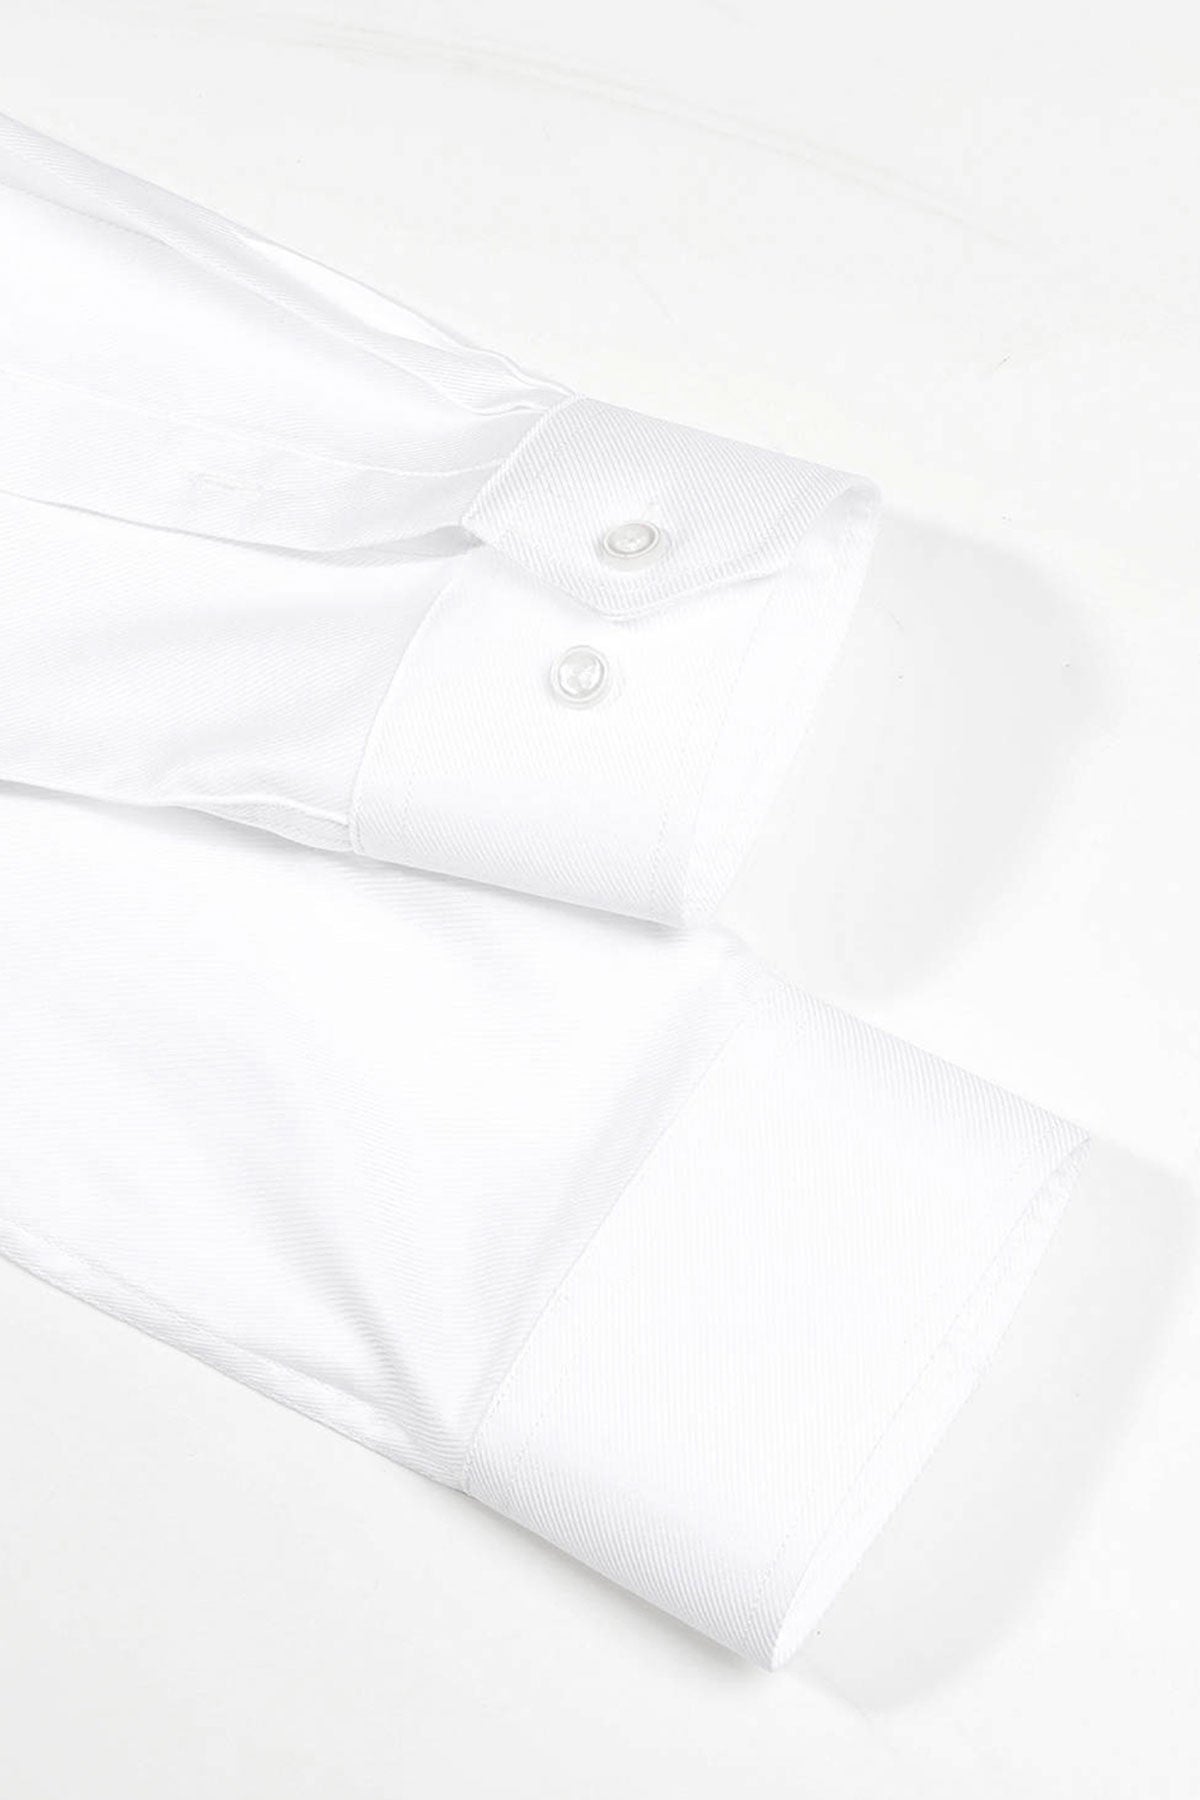 Strijkvrij Overhemd - Extra Lange Mouw - Twill - Overhemd - Vercate - Vercate - Overhemden - Strijkvrije overhemden - Heren - herenkleding